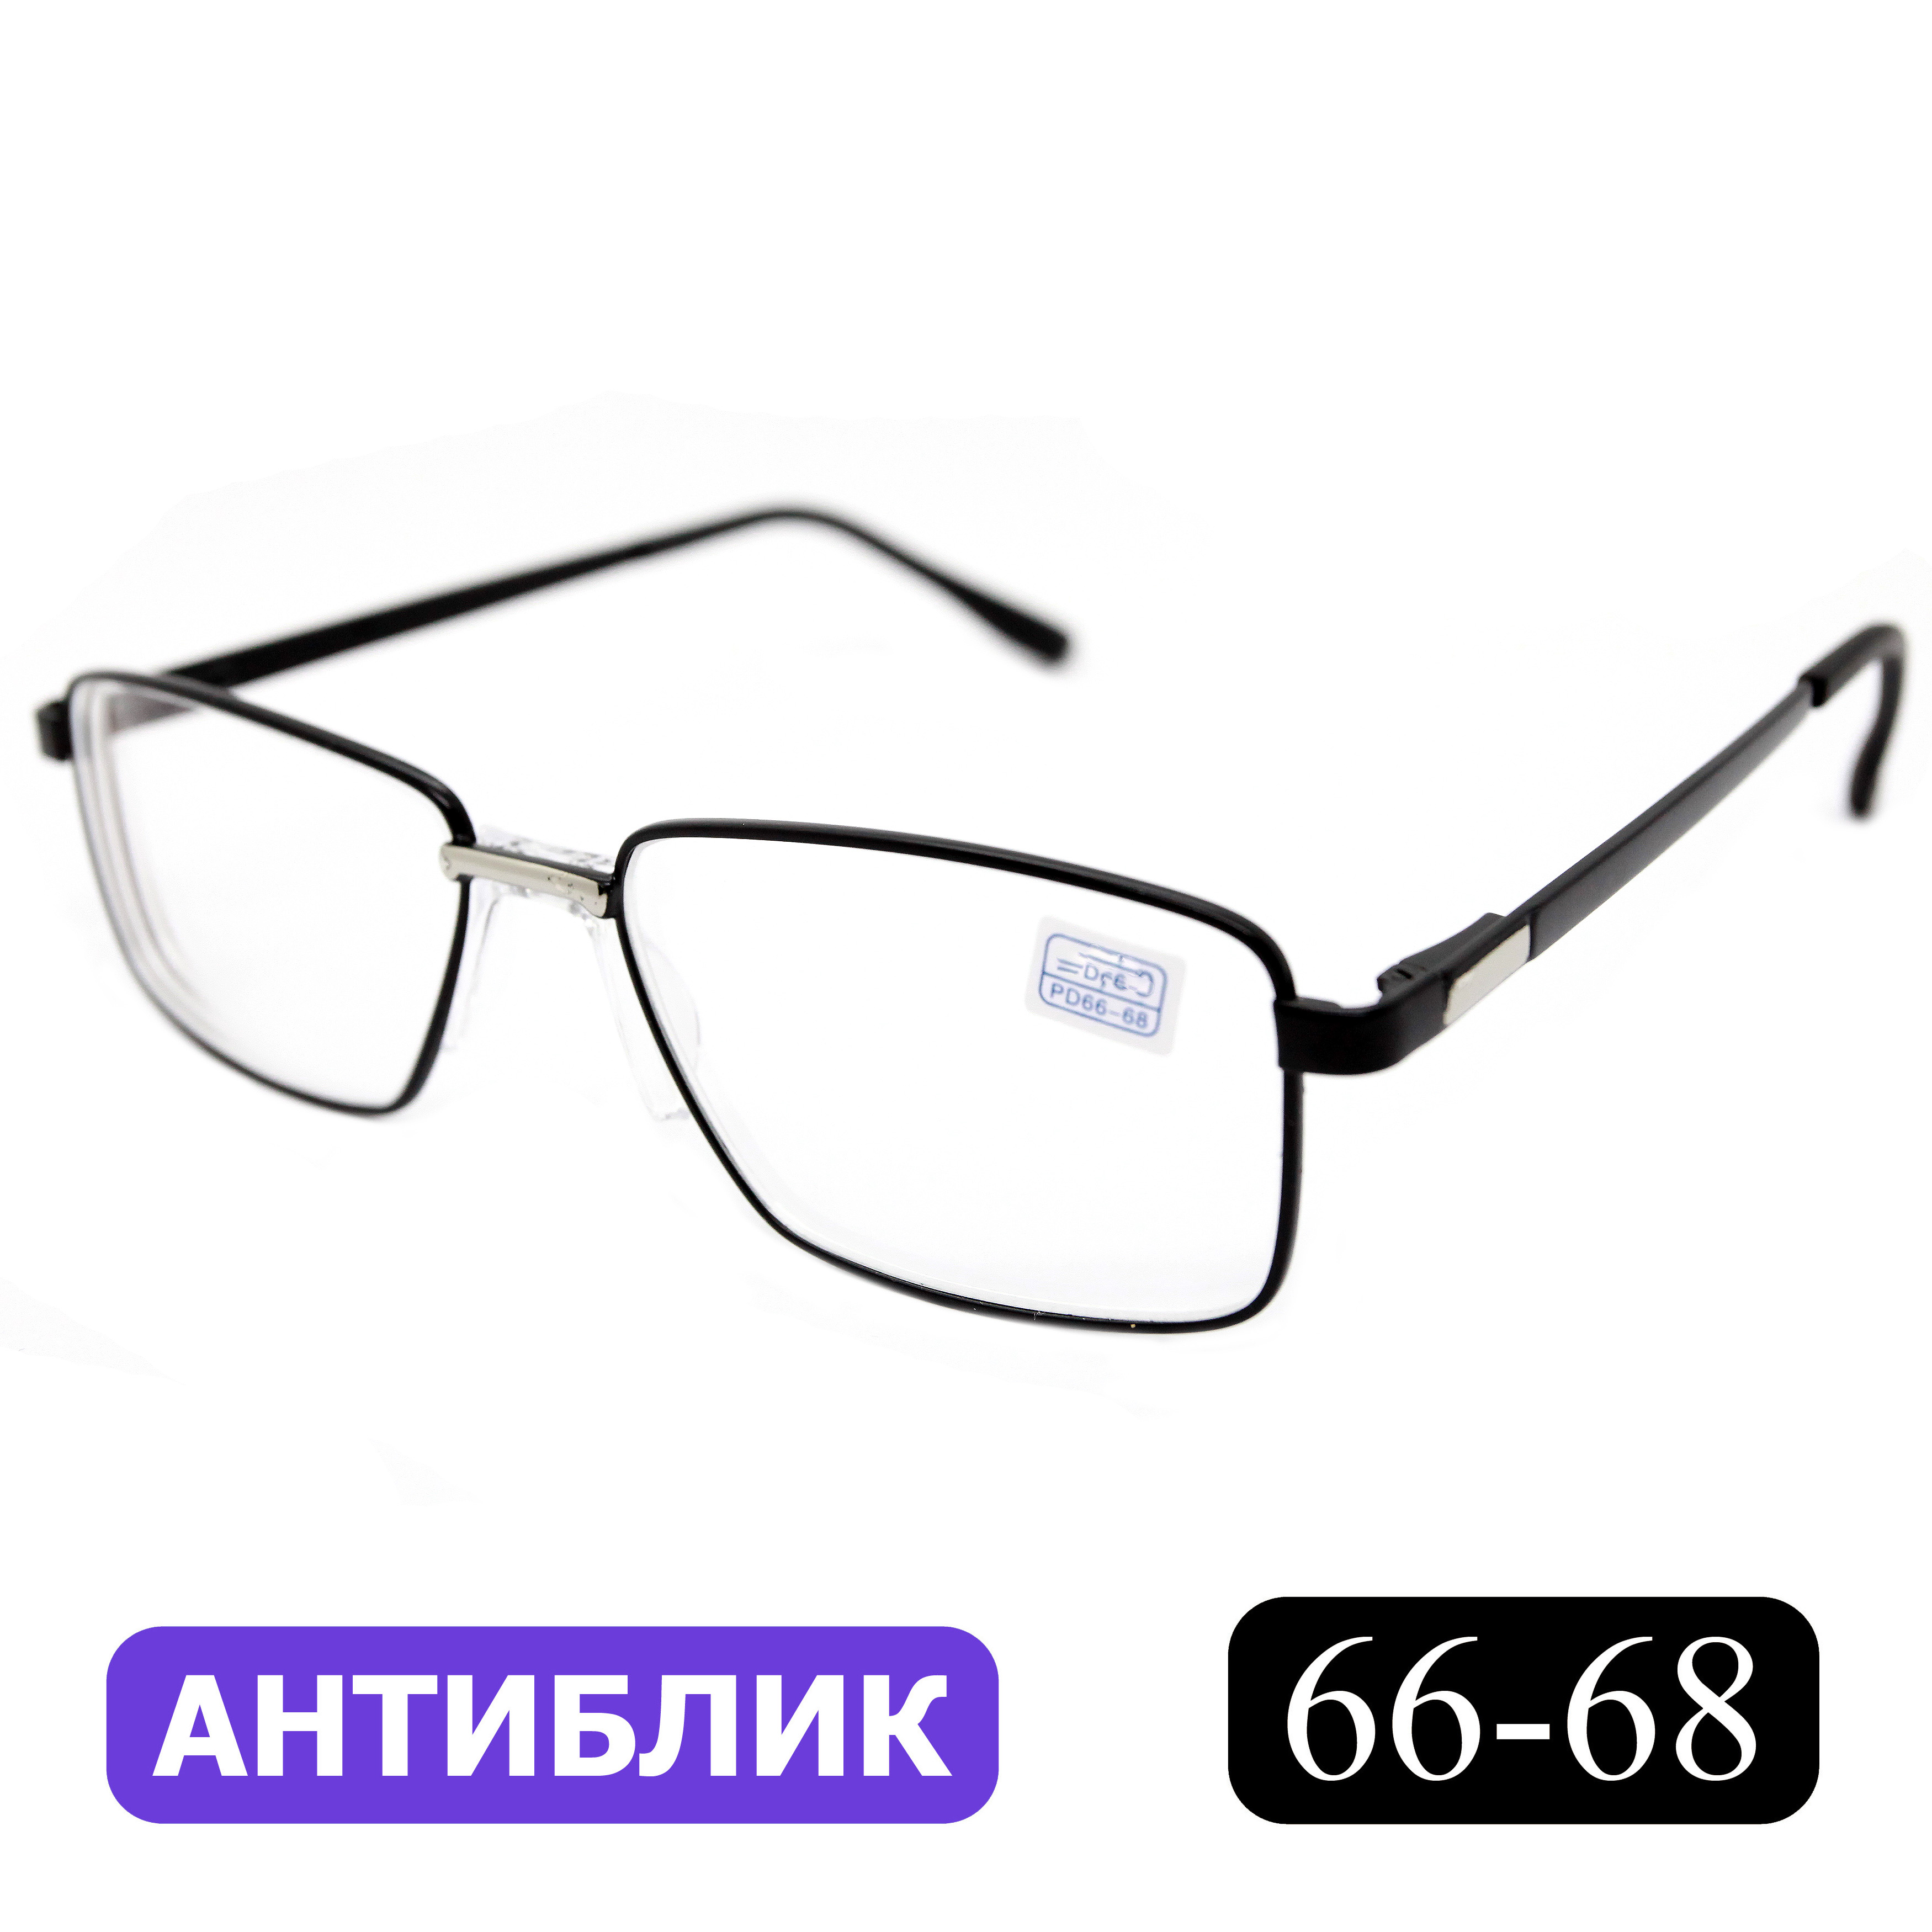 Готовые очки для зрения Favarit 7705 -0,50, без футляра, с антибликом, черные, РЦ 66-68